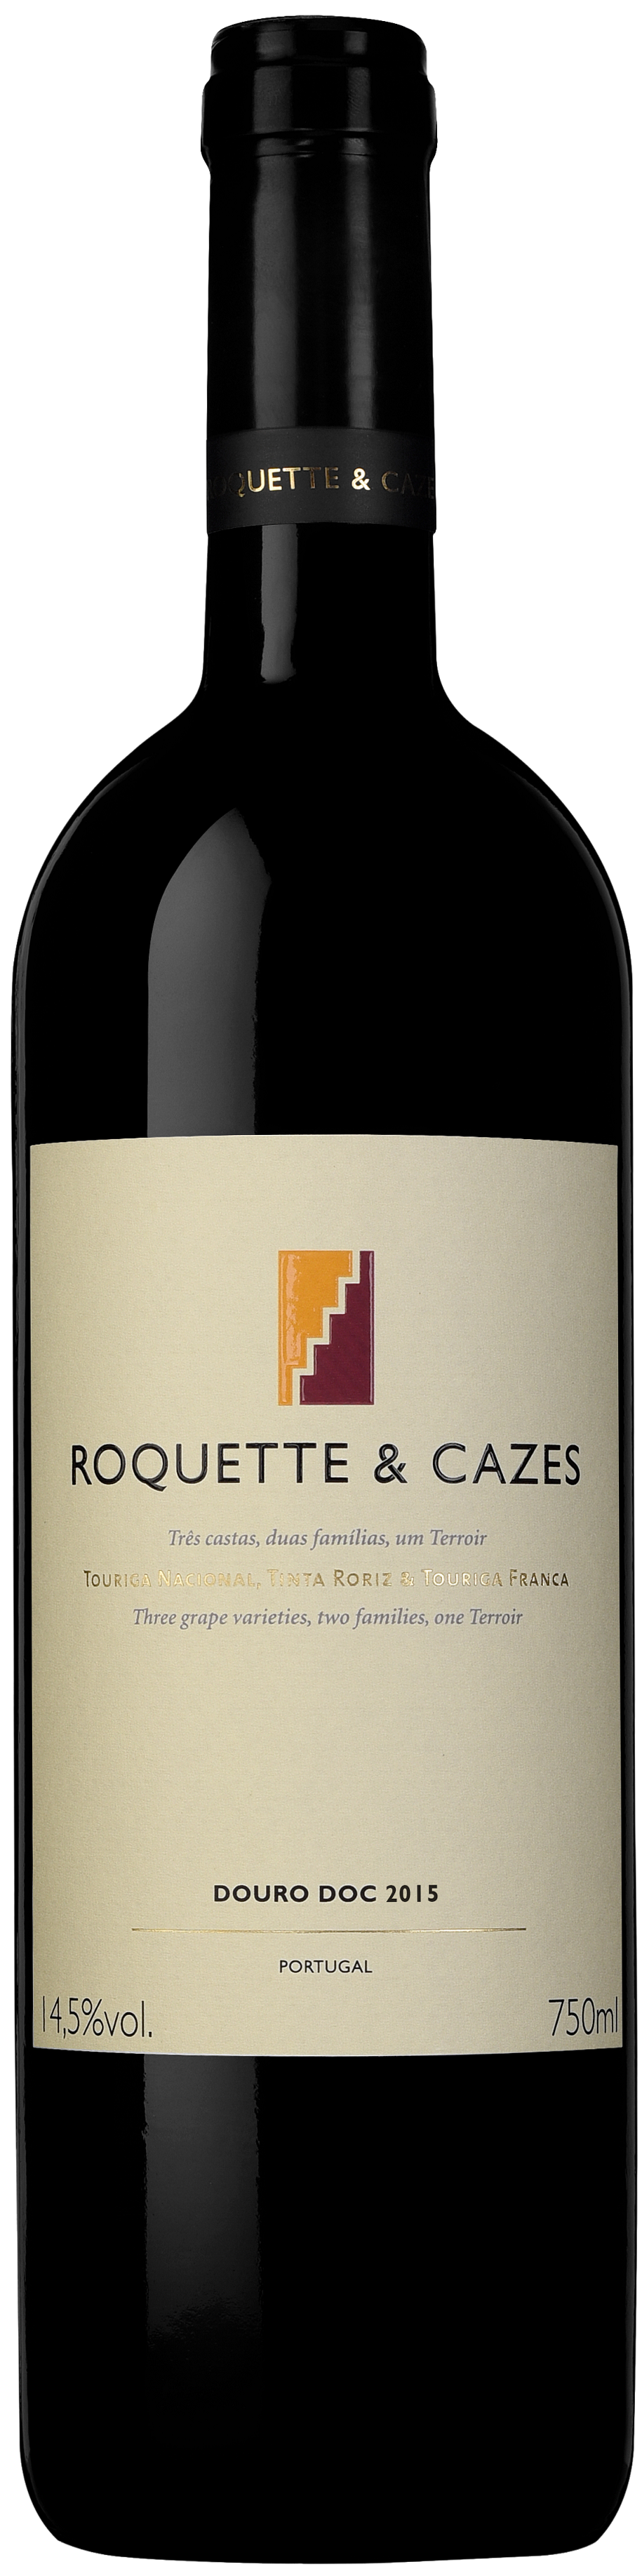 Roquette & Cazes, 2015